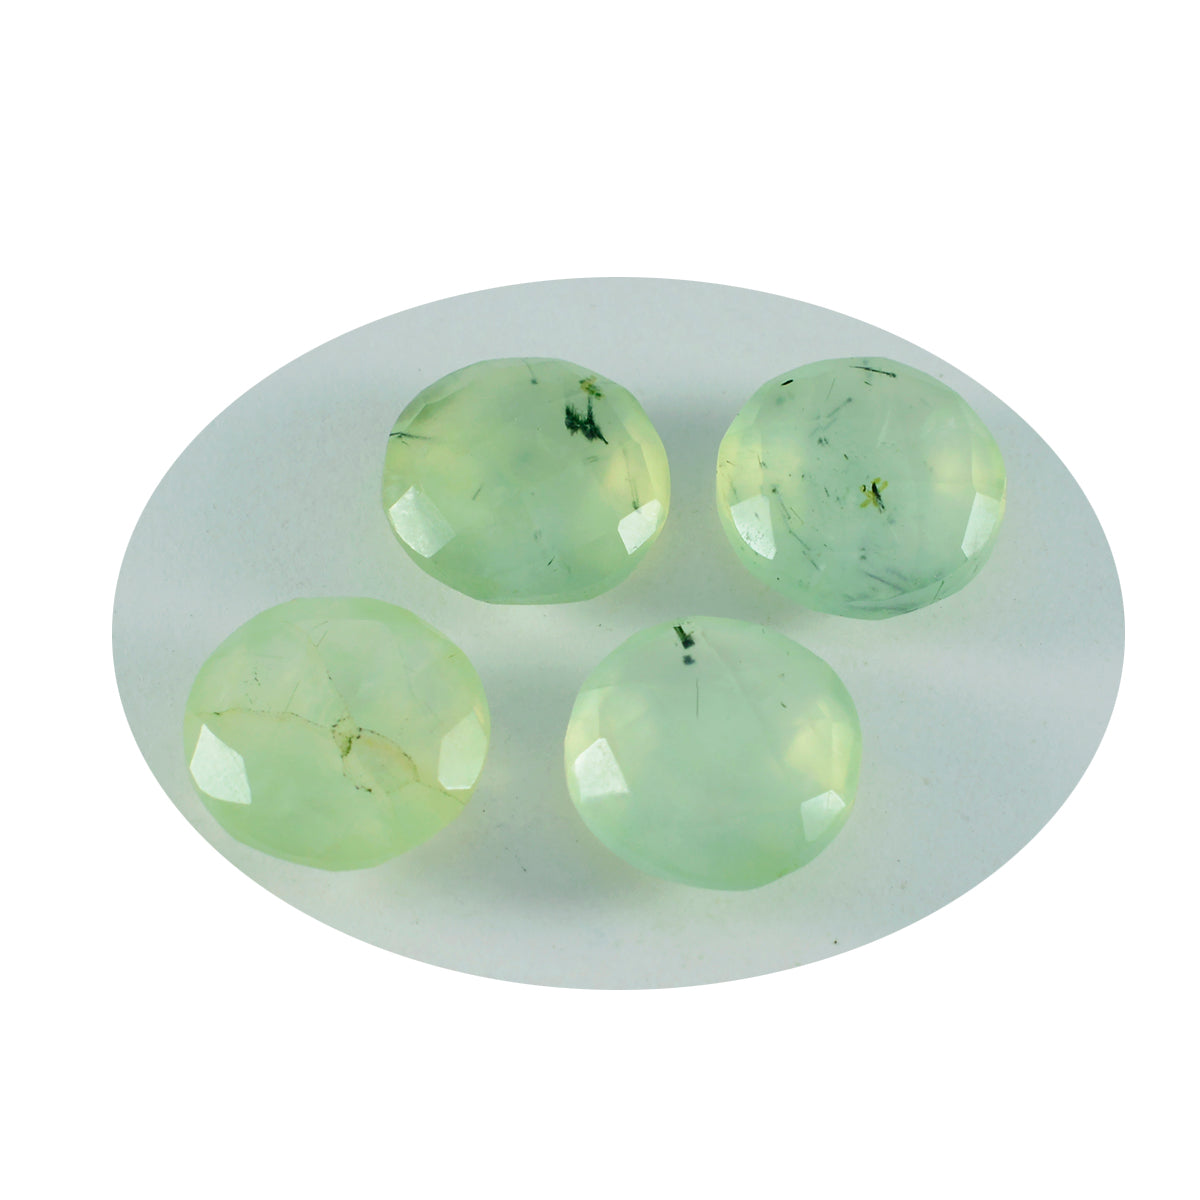 riyogems 1 pieza de prehnita verde facetada 15x15 mm forma redonda hermosa calidad piedra preciosa suelta